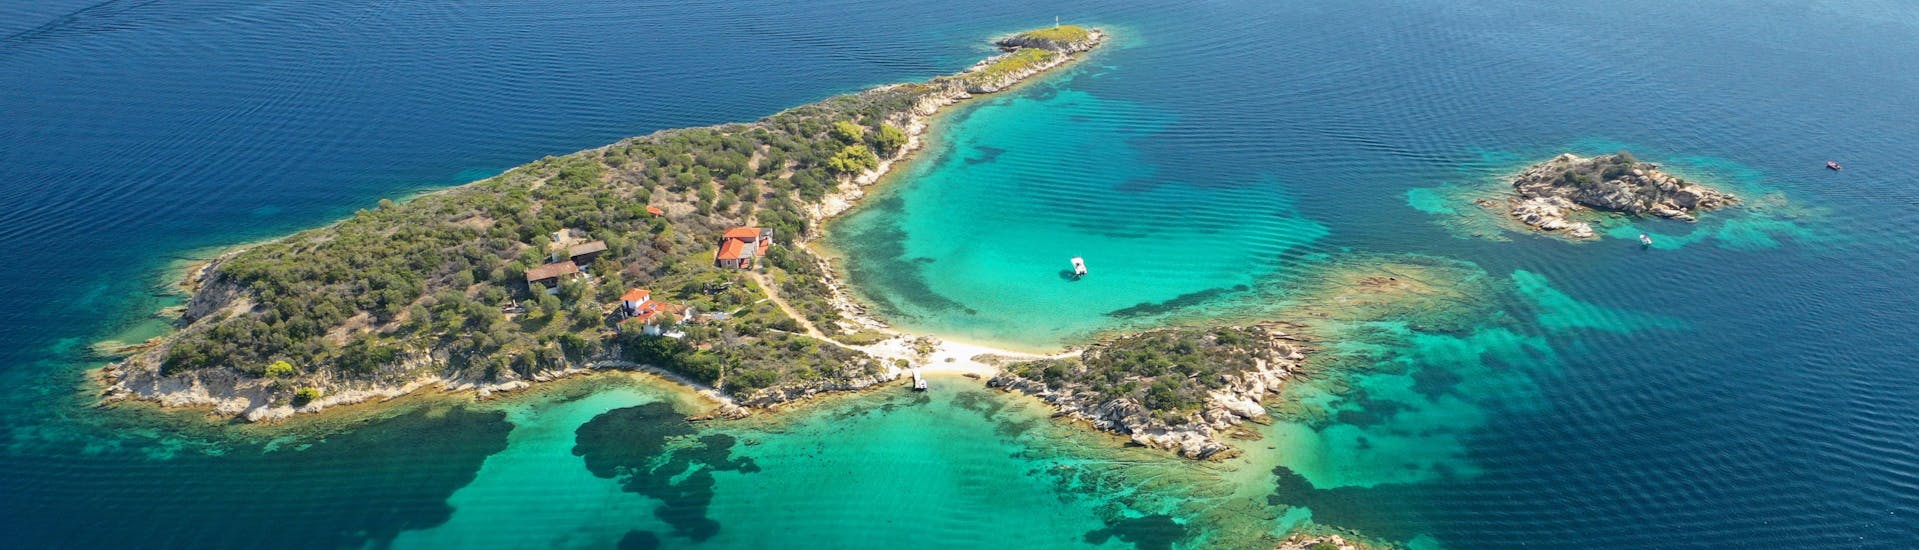 Photo panoramique aérienne par drone de l'îlot emblématique de Peristeri avec une mer turquoise cristalline près de l'île de Diaporos.